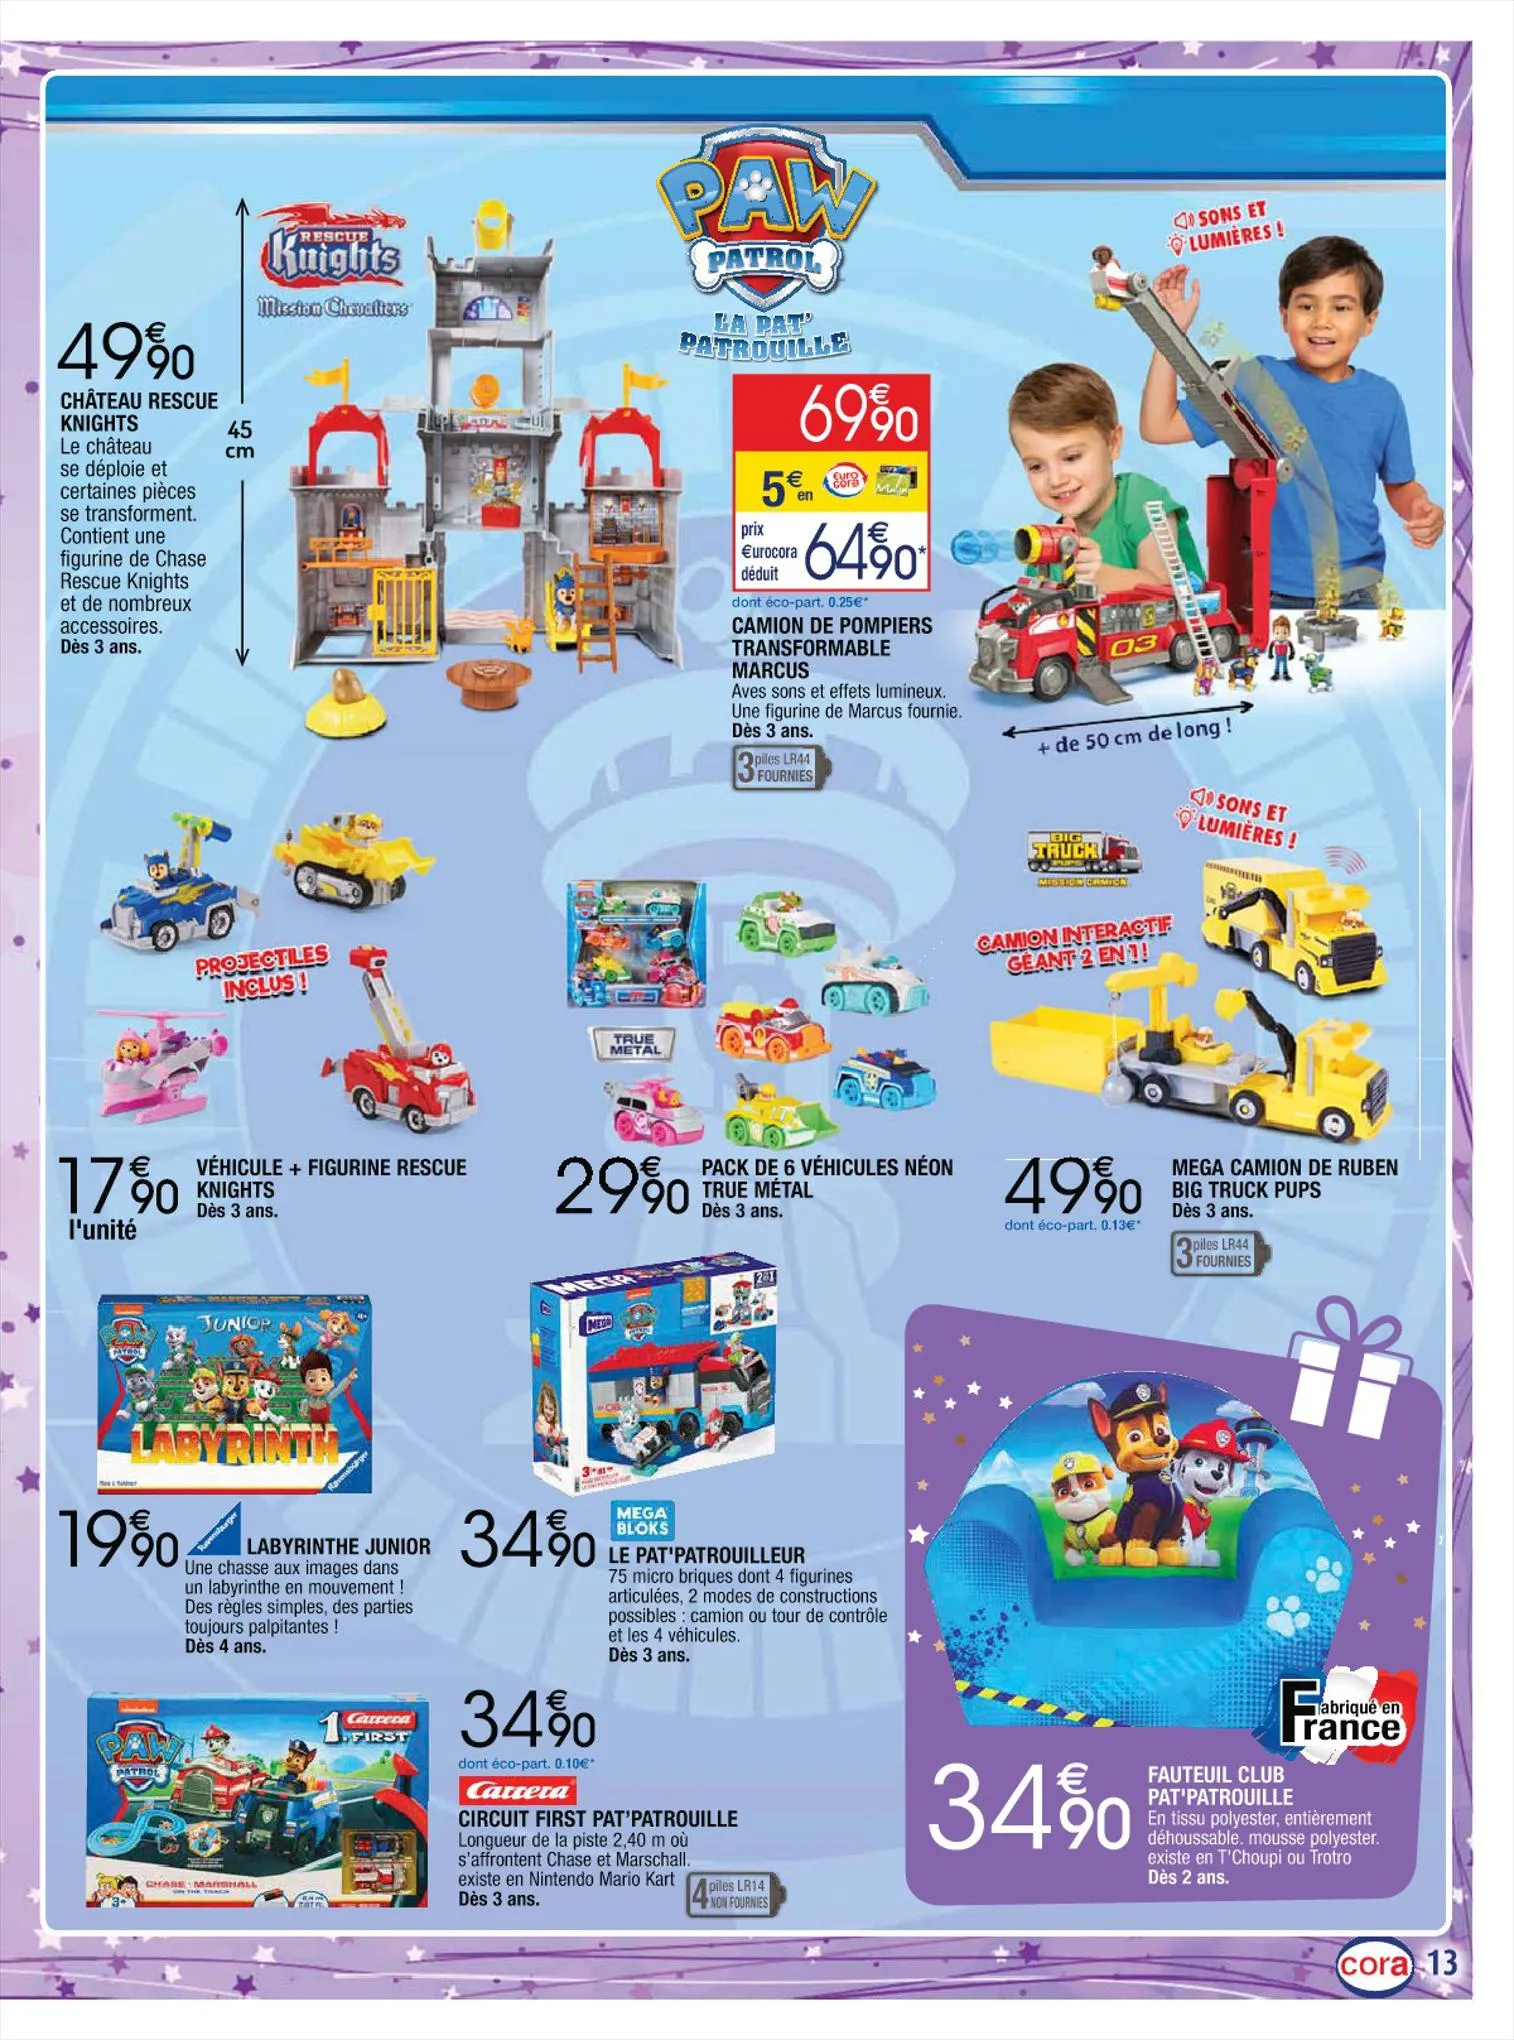 Catalogue Les jouets enchantés, page 00013